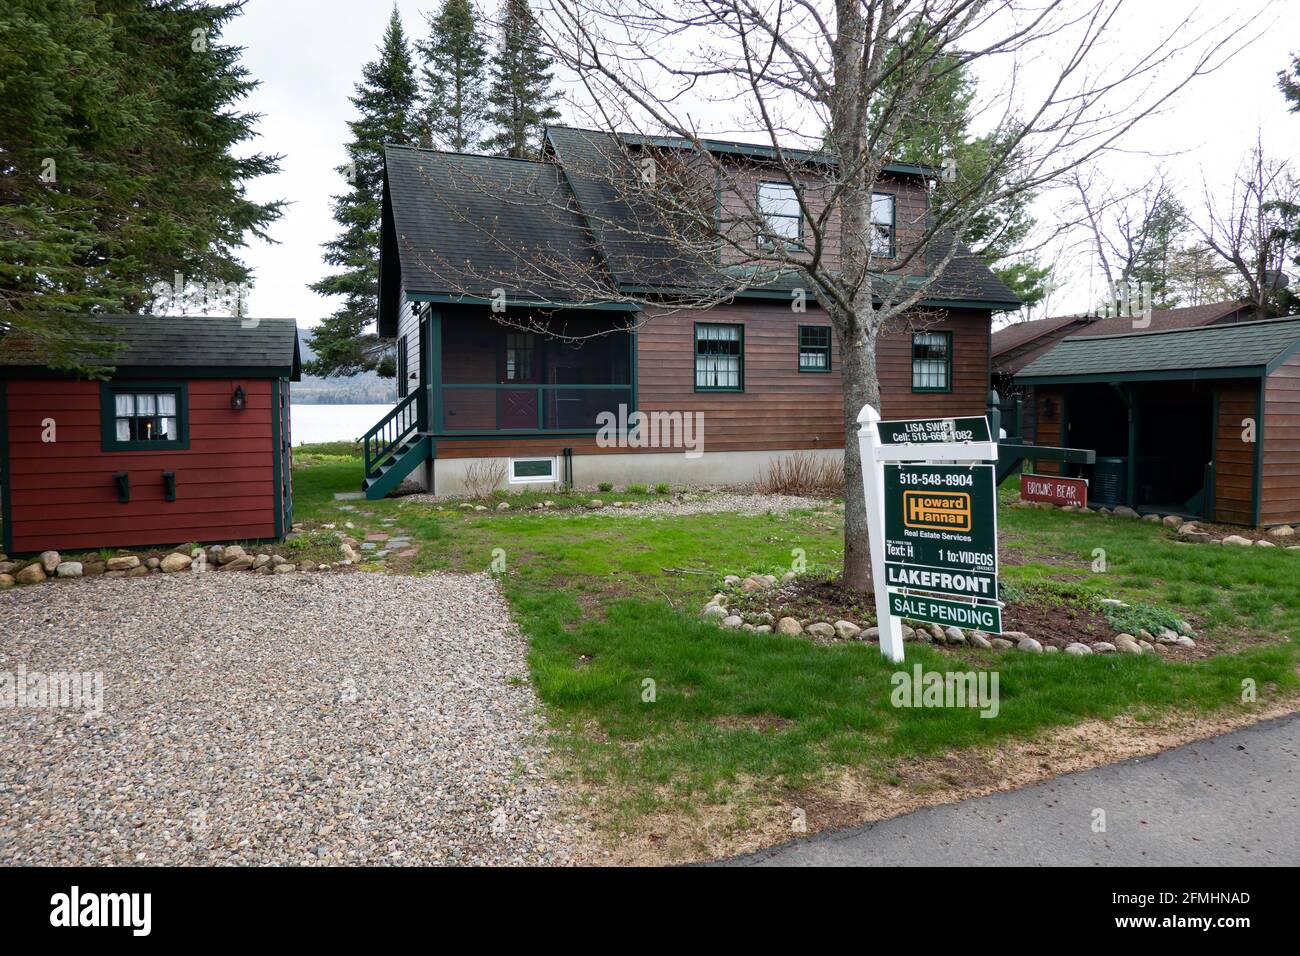 Una casa fronte lago in vendita sul lago Pleasant a Speculator, NY ha segnato la vendita in sospeso, un segno dell'attuale mercato immobiliare. Foto Stock